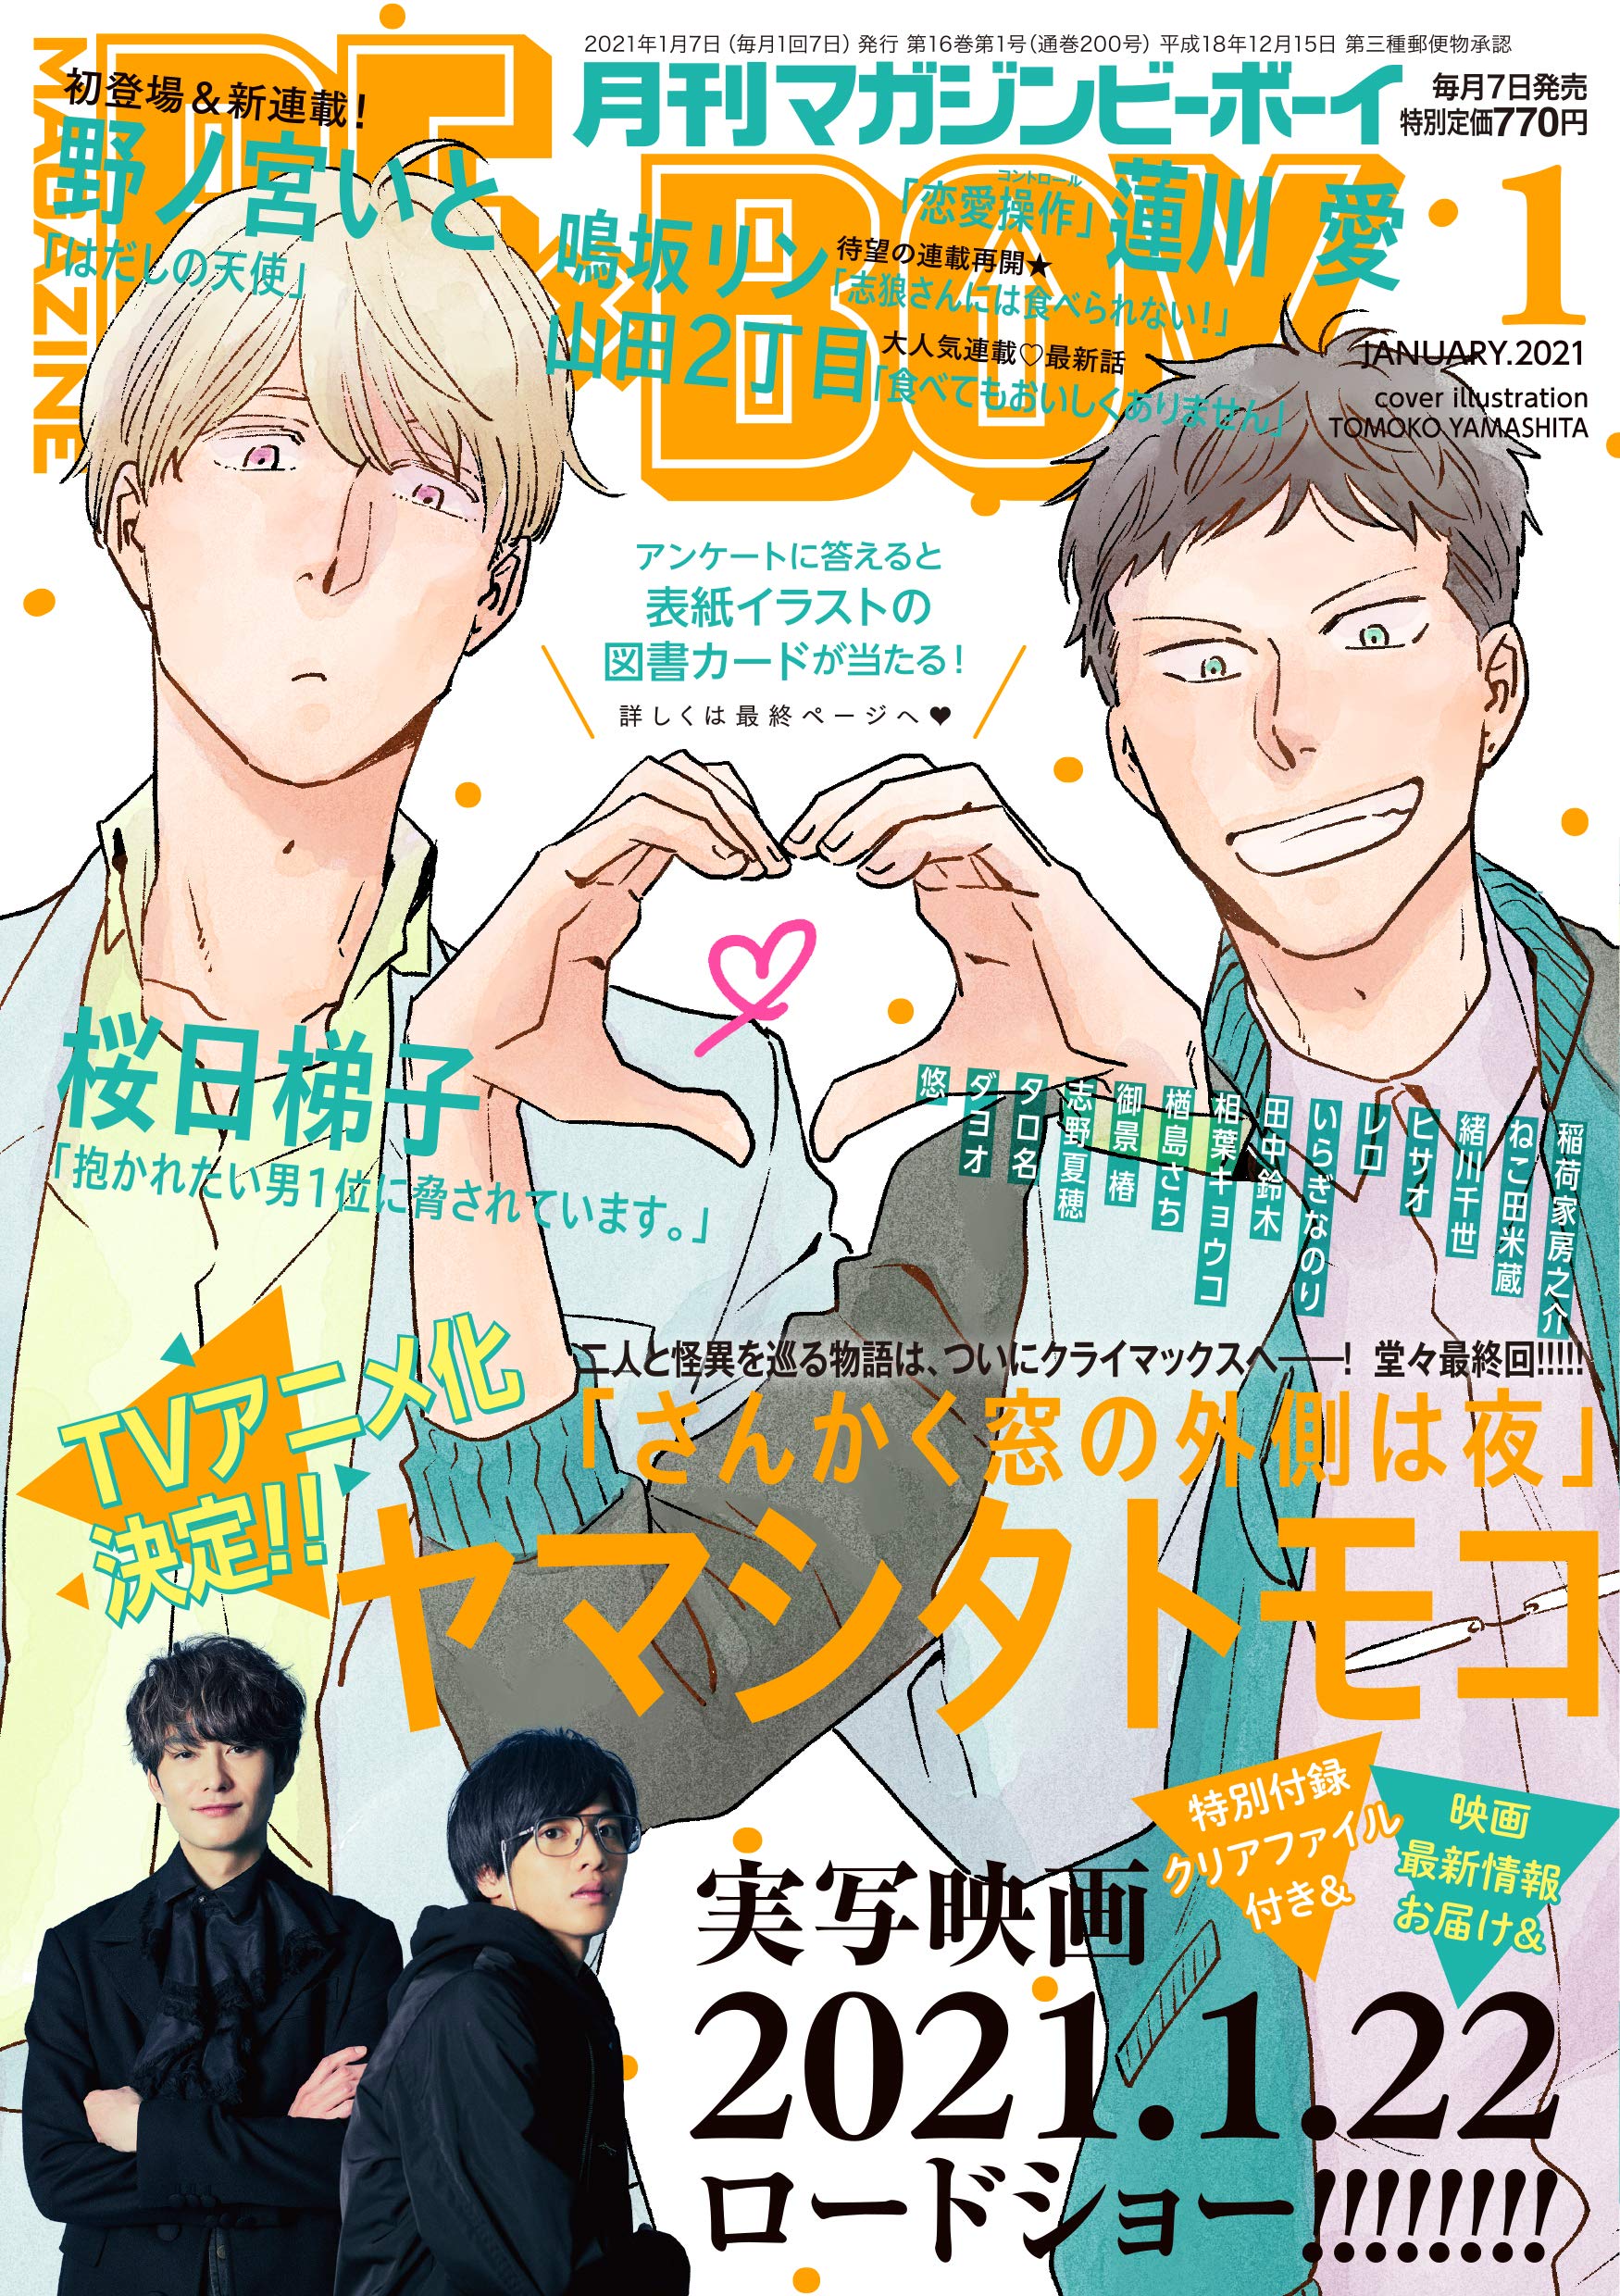 Boys Love (Yaoi) Comics - B-boy COMICS (MAGAZINE BE×BOY (マガジンビーボーイ) 2021年01月号 [雑誌]) / Nekota Yonezou & Yamashita Tomoko & Hasukawa Ai & Tanaka Suzuki & Shino Natsuho